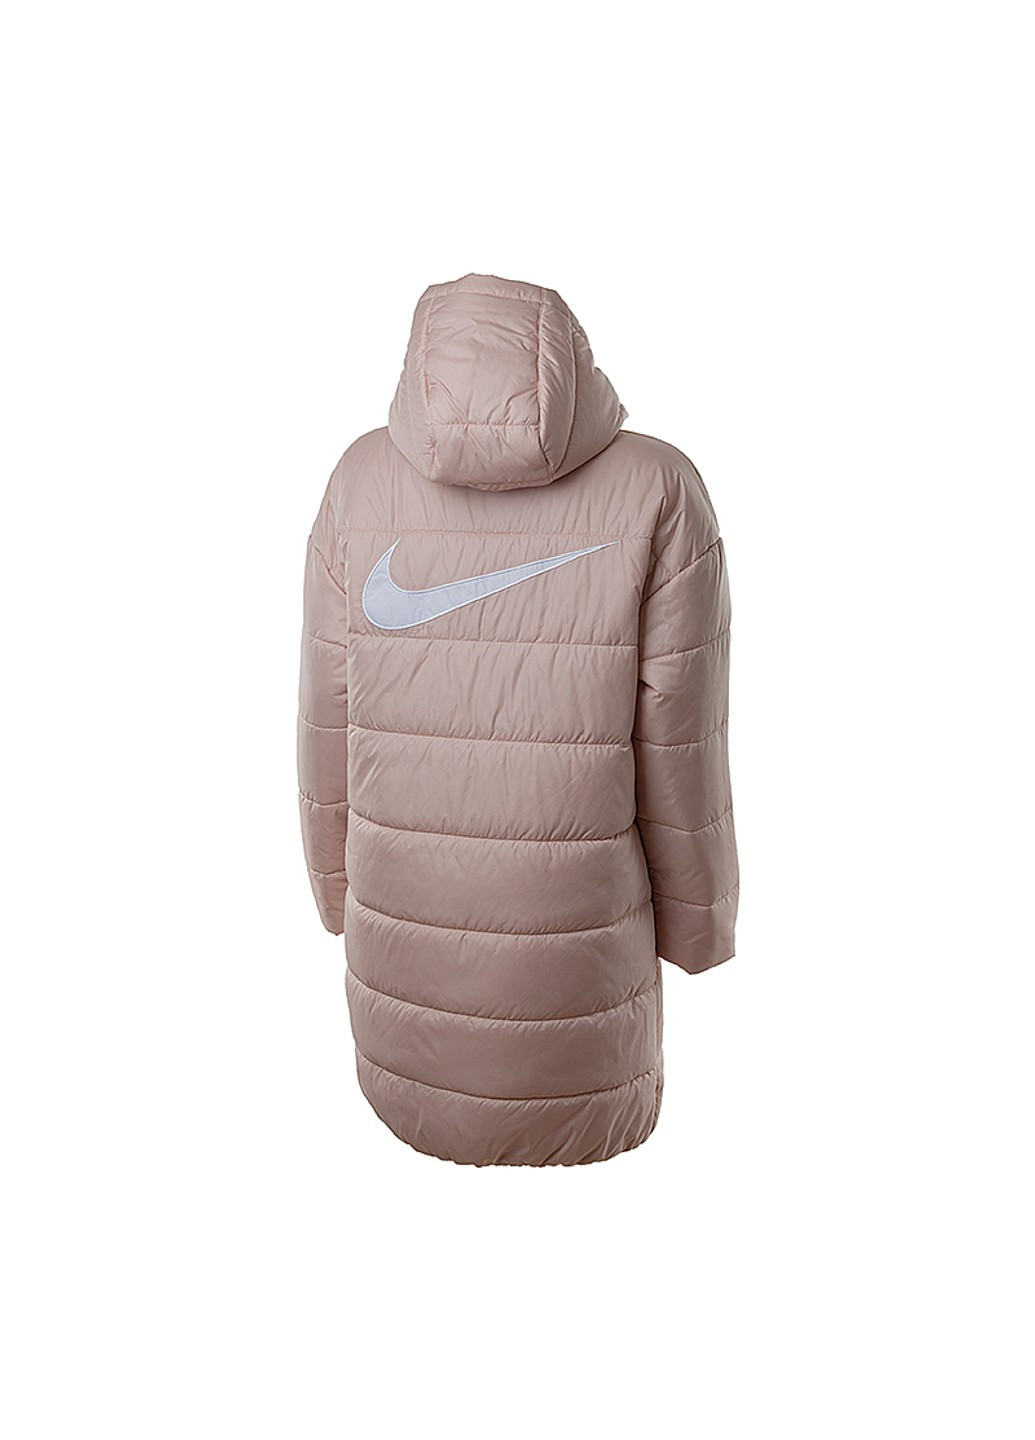 Розовая демисезонная куртка w nsw tf rpl classic hd parka Nike